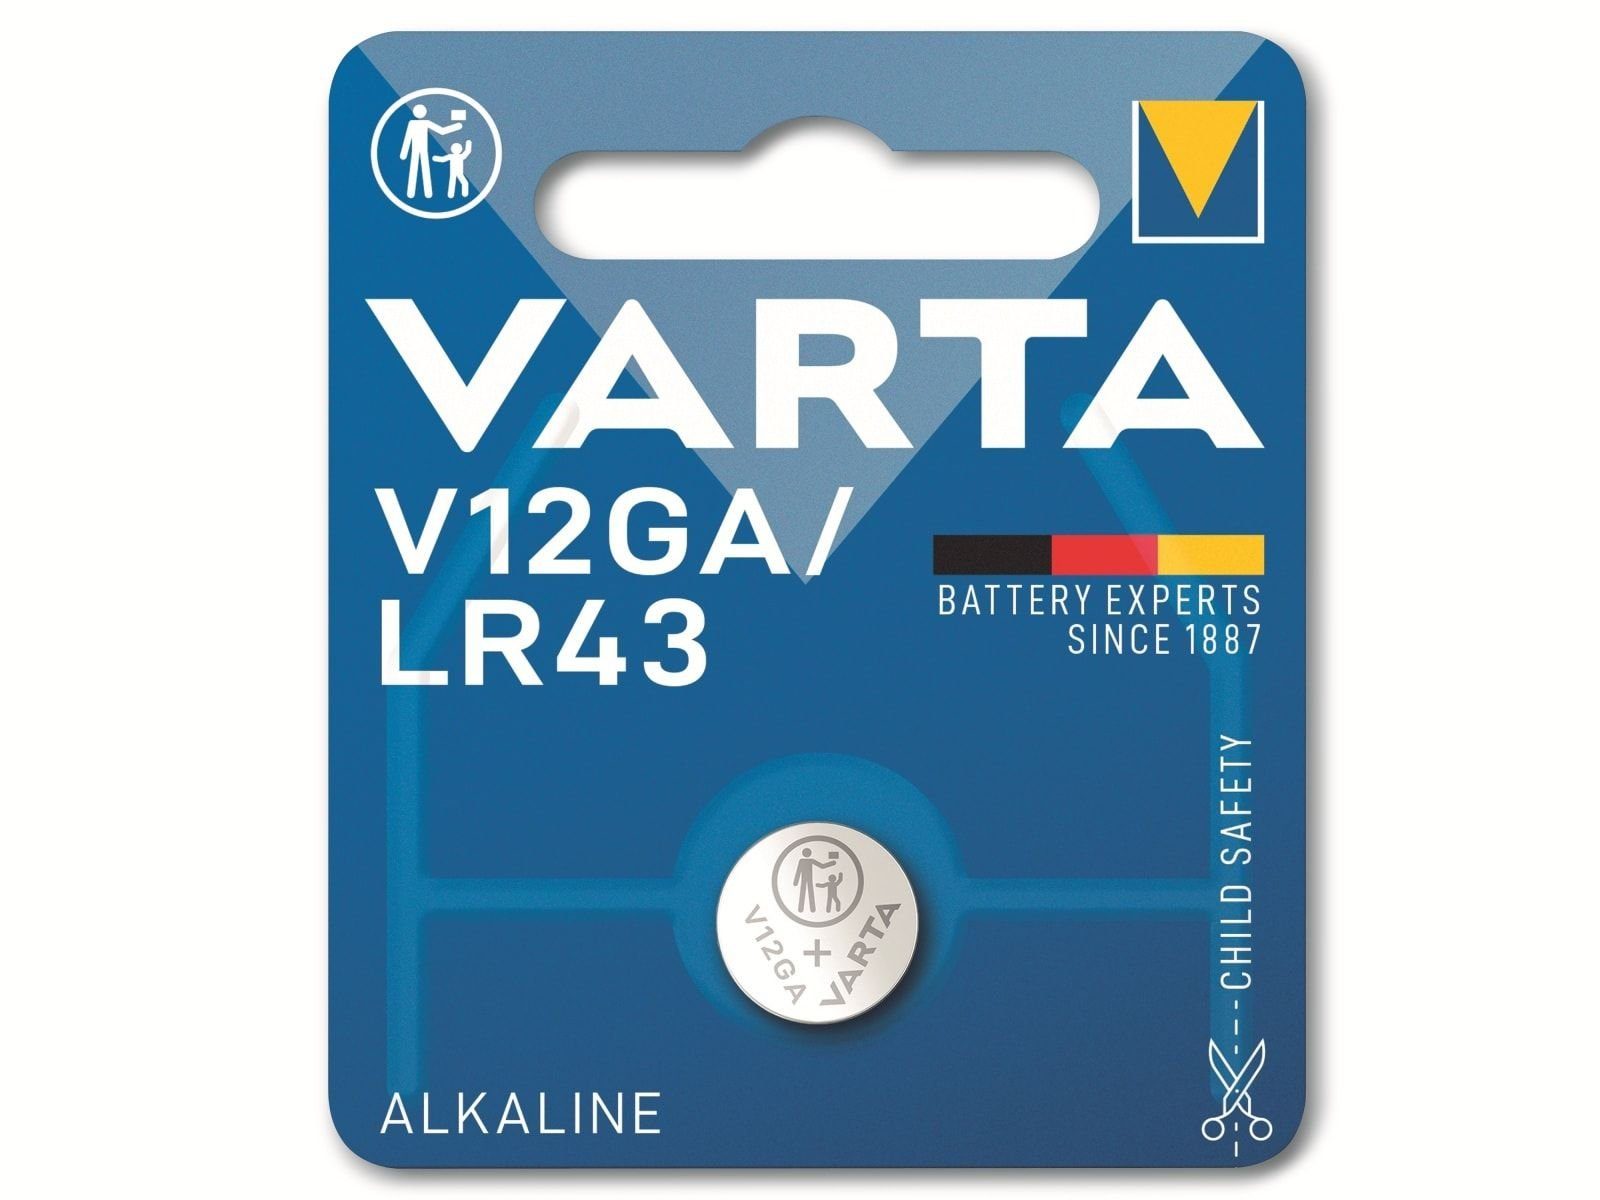 VARTA VARTA Knopfzelle Alkaline, LR43, 1.5V V12GA, Knopfzelle